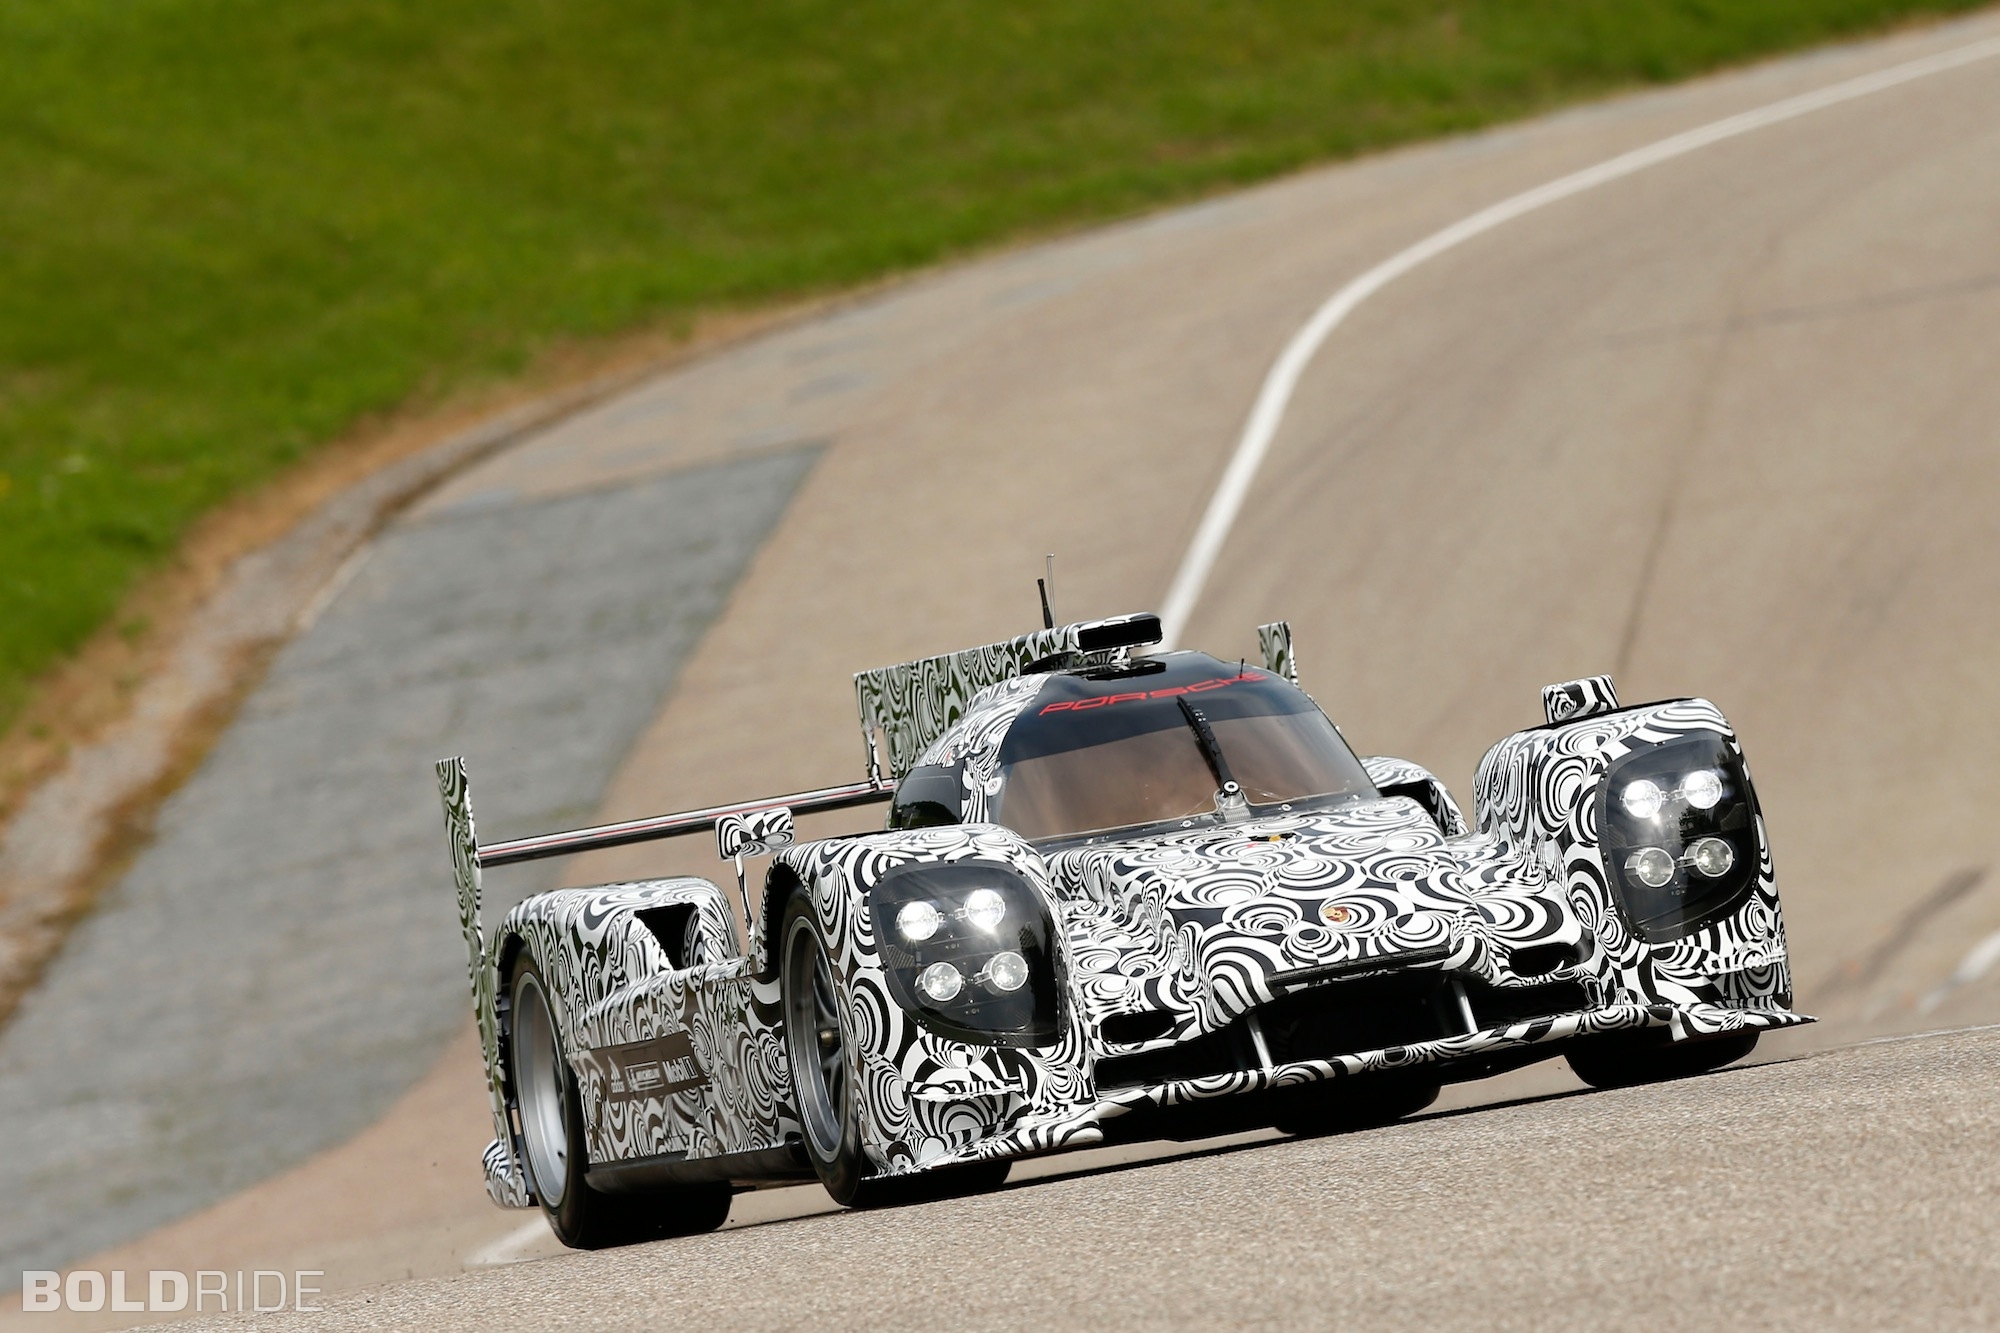 2013, Porsche, Lmp1, Prototype, Race, Racing Wallpaper